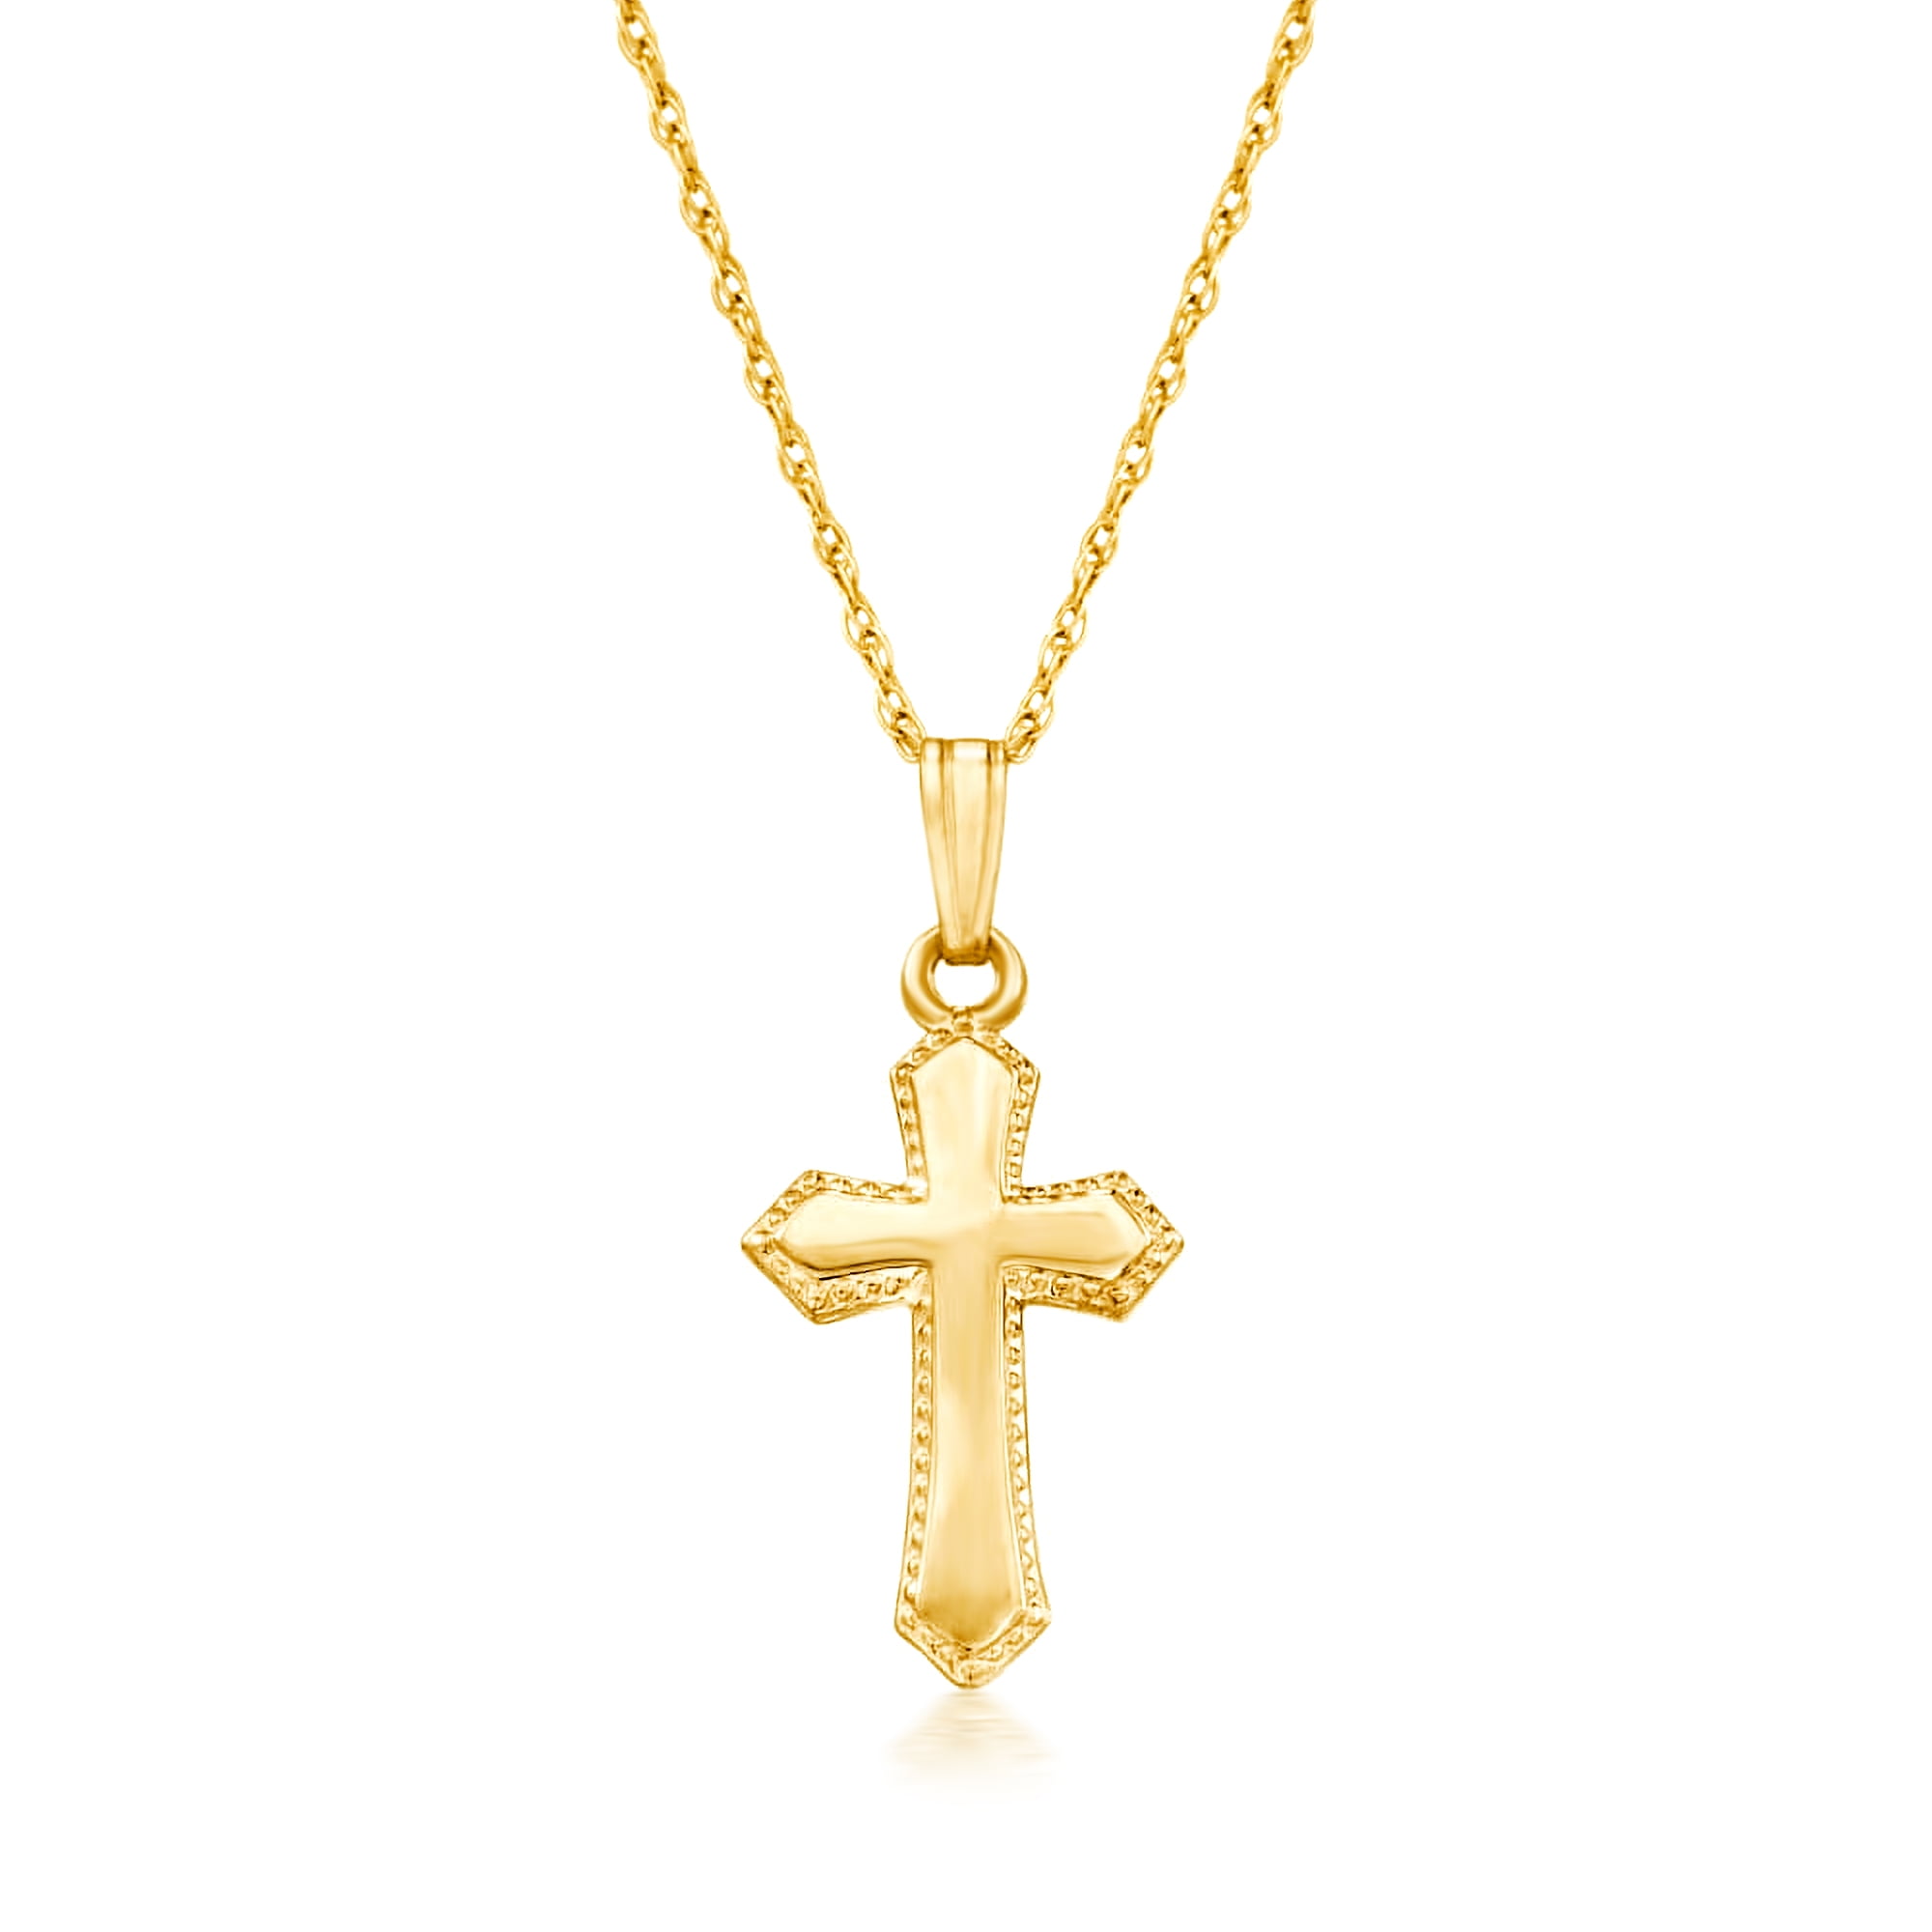 Children's Engraved Cross Necklace – Tom Design Shop